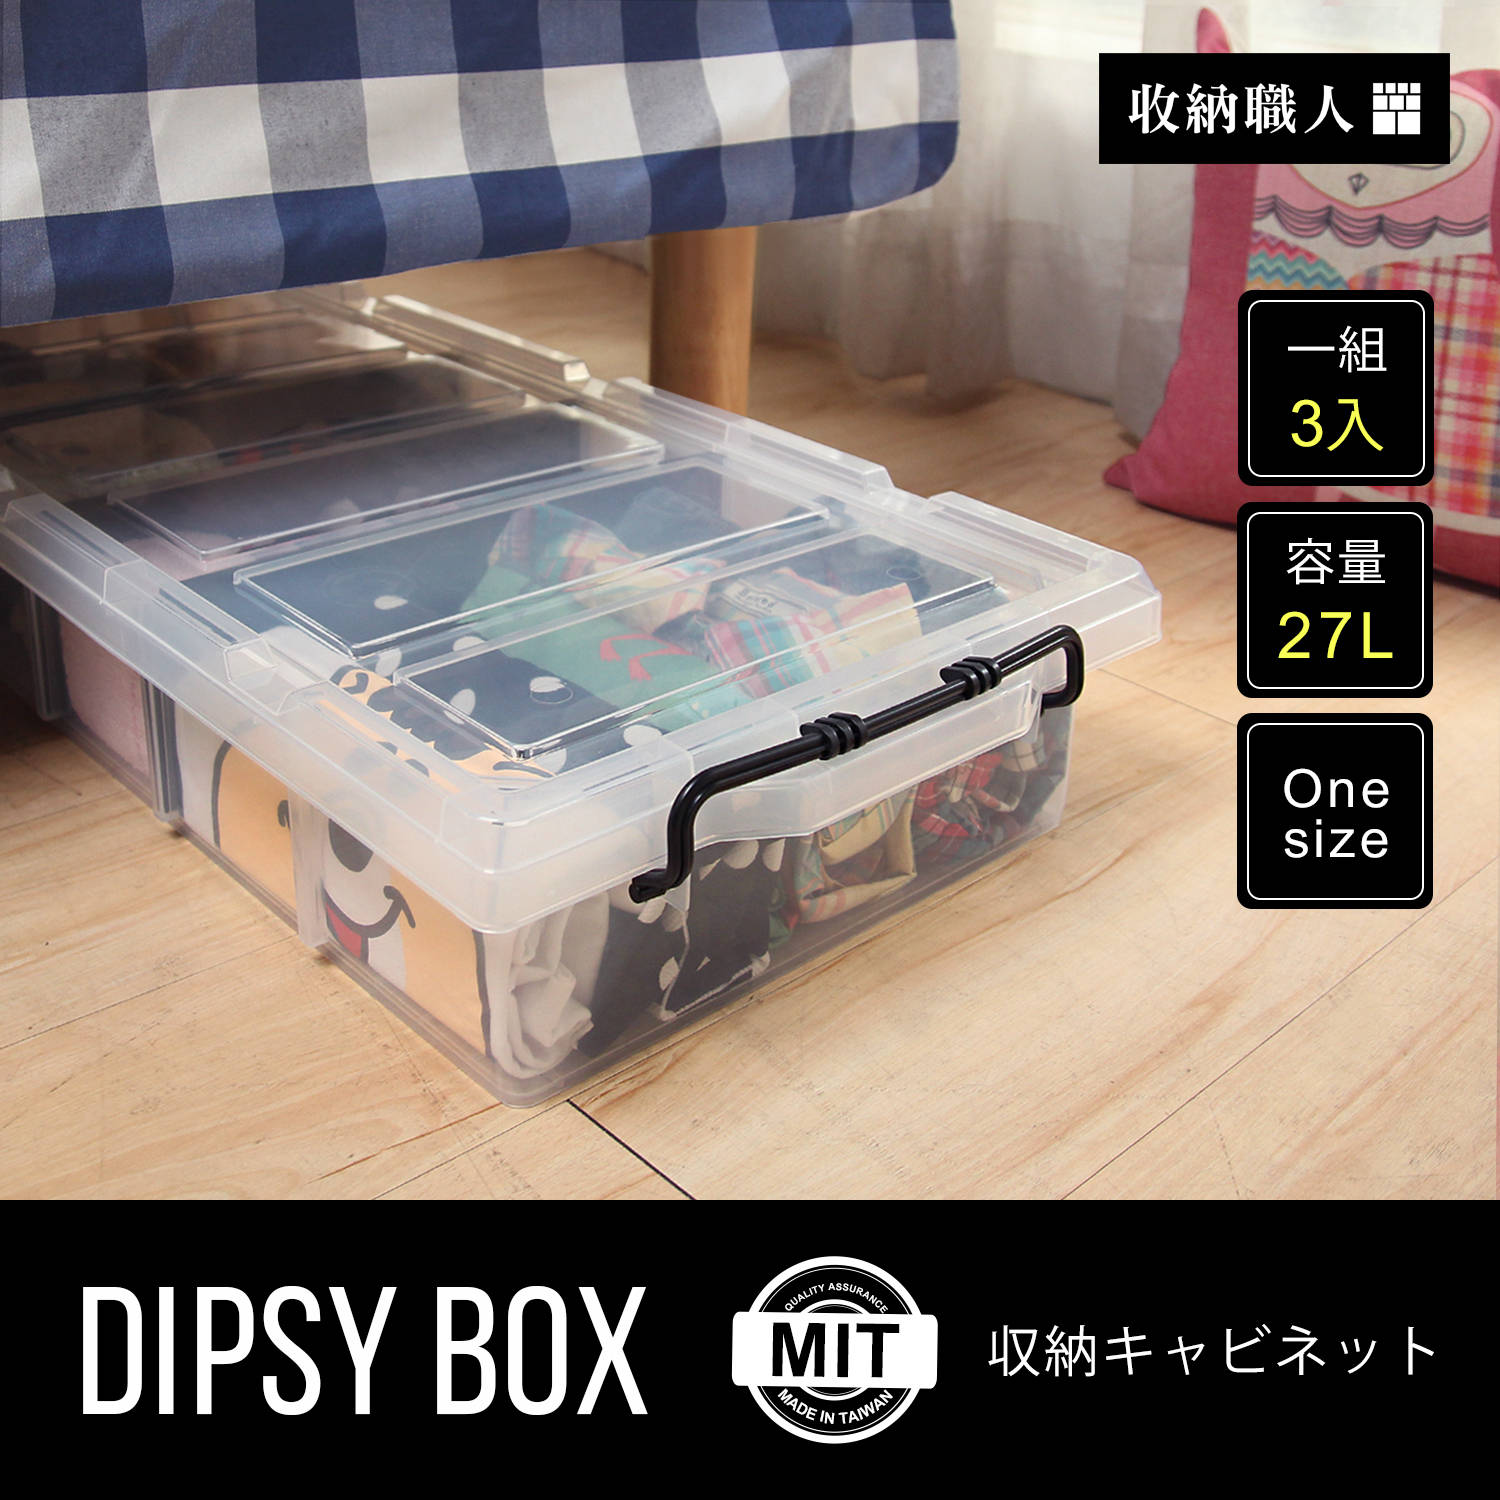 【收納職人】DIPSY 狄西透明六格分類收納箱/床底整理箱。三入組 / H&D / 日本MODERM DECO